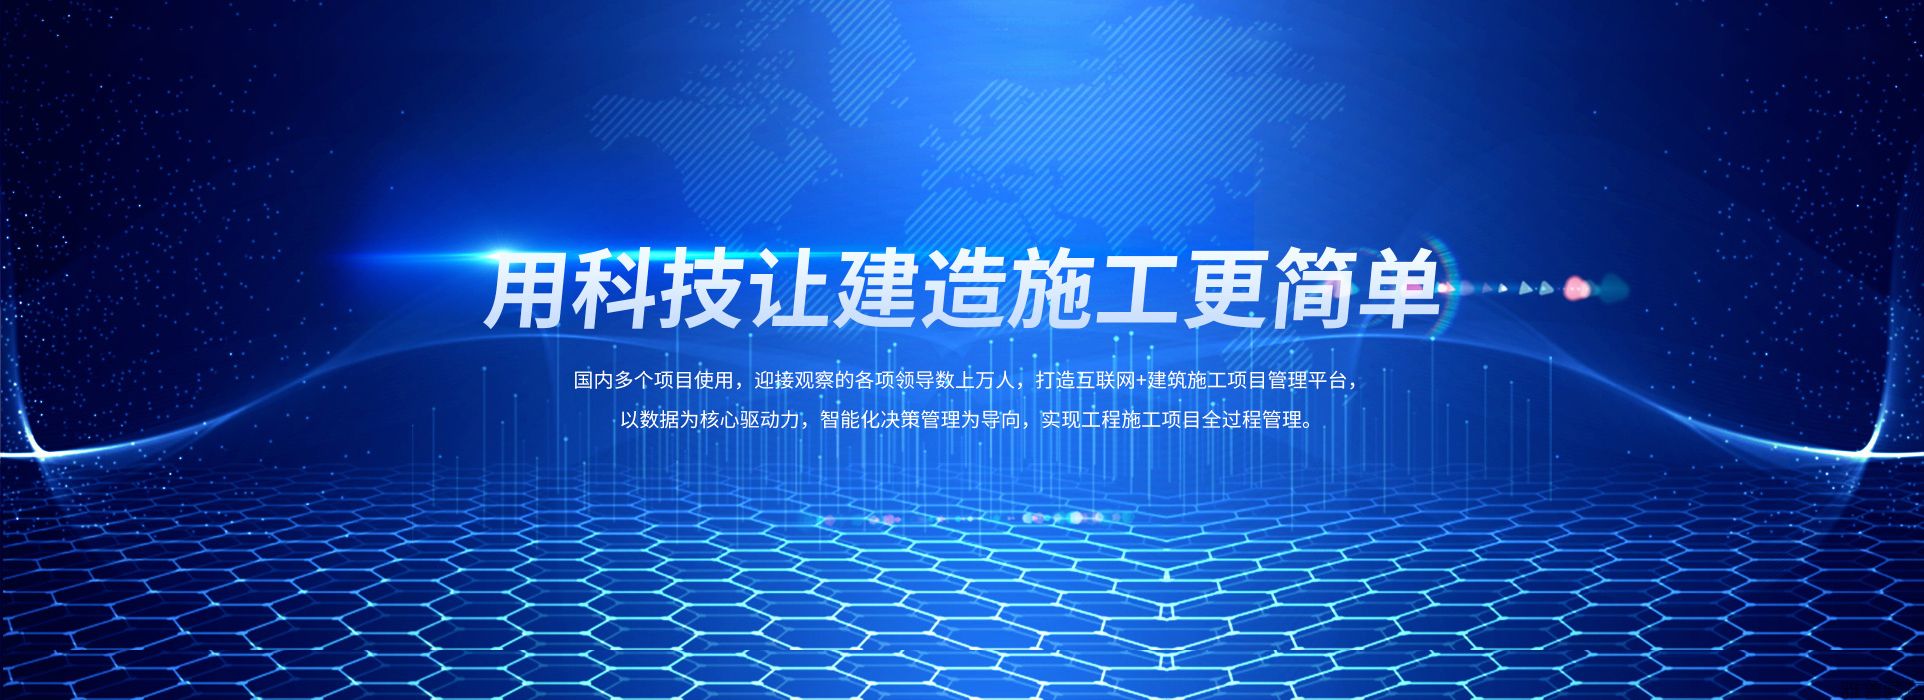 深圳市云程智联大数据科技有限公司